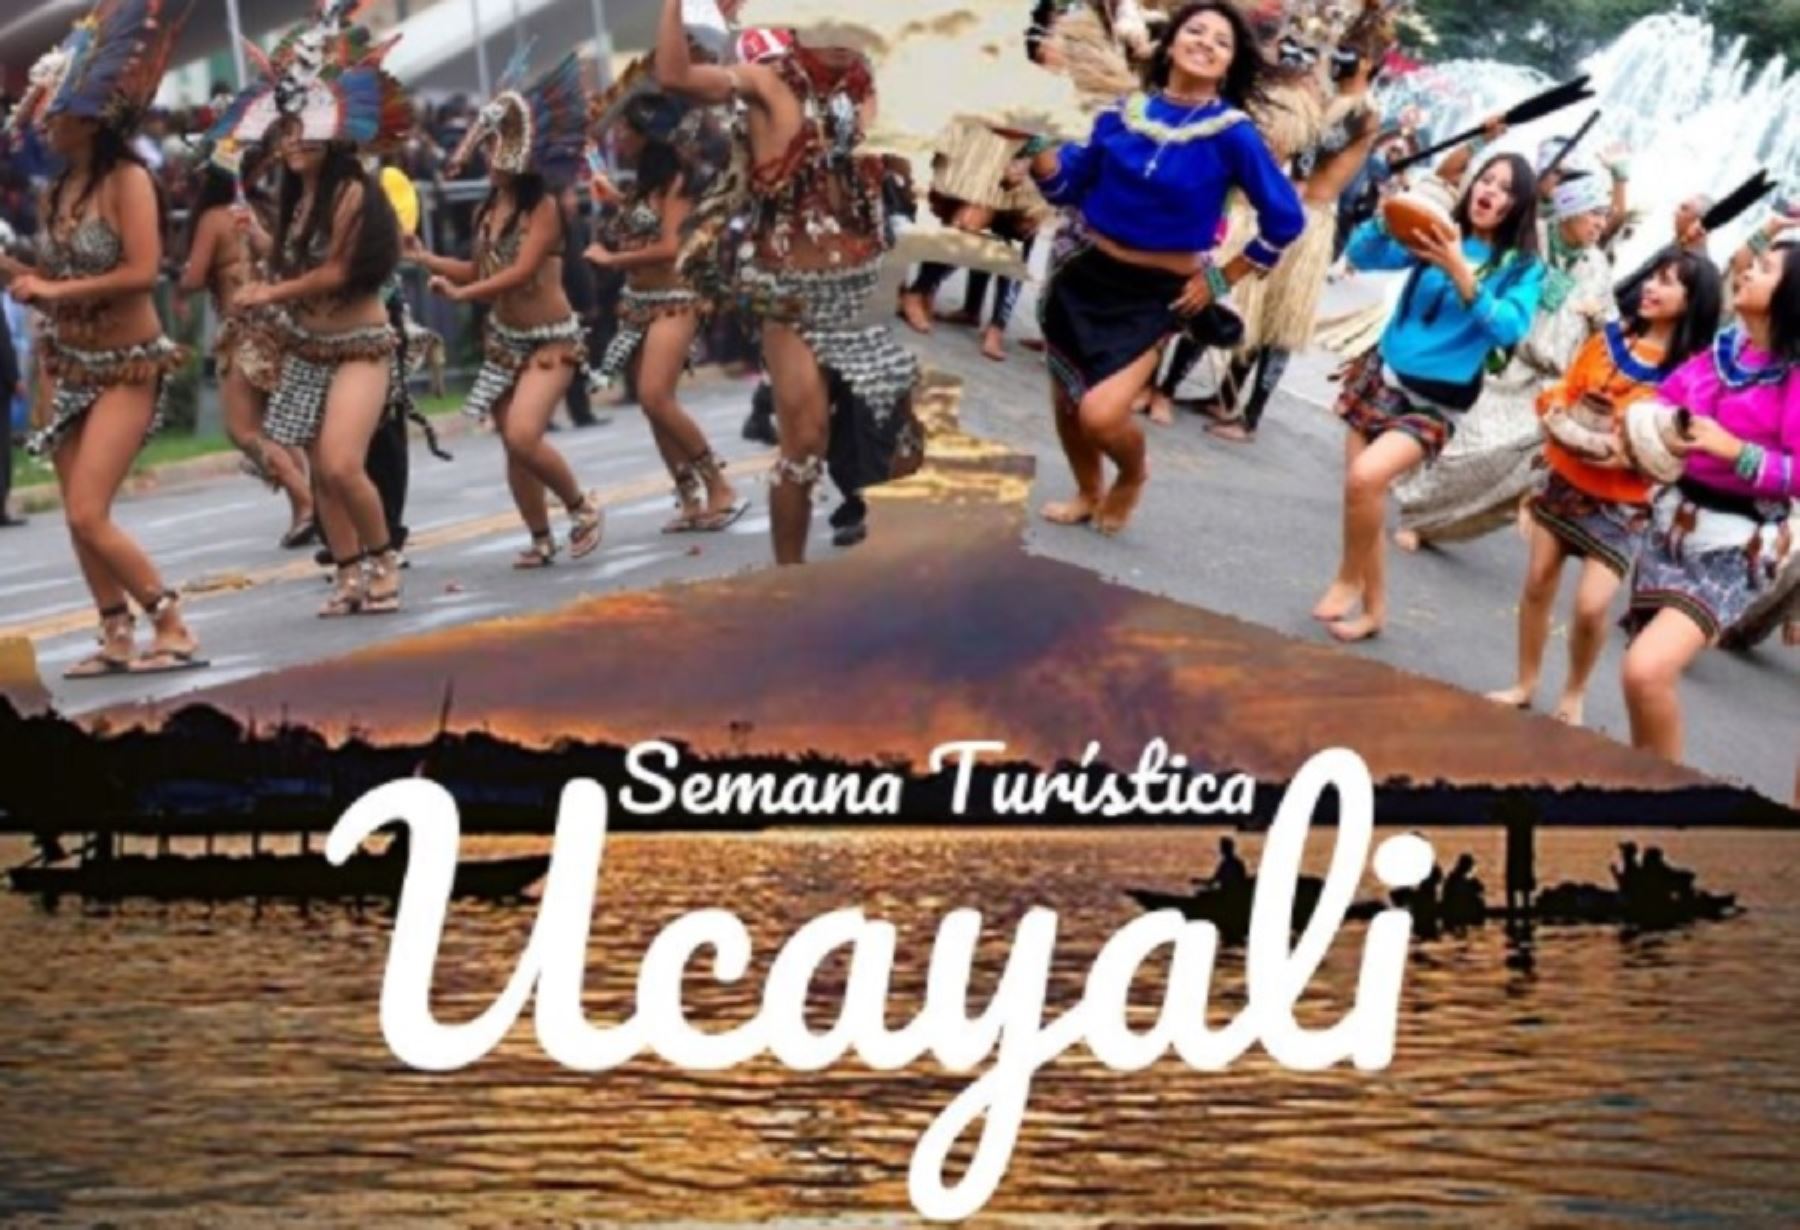 La Semana Turística de Ucayali es una gran oportunidad para viajar a esta paradisiaca región y disfrutar de sus atractivos que cautivan por su belleza paisajística, gran biodiversidad, cultura ancestral y la afectuosa hospitalidad de sus habitantes.